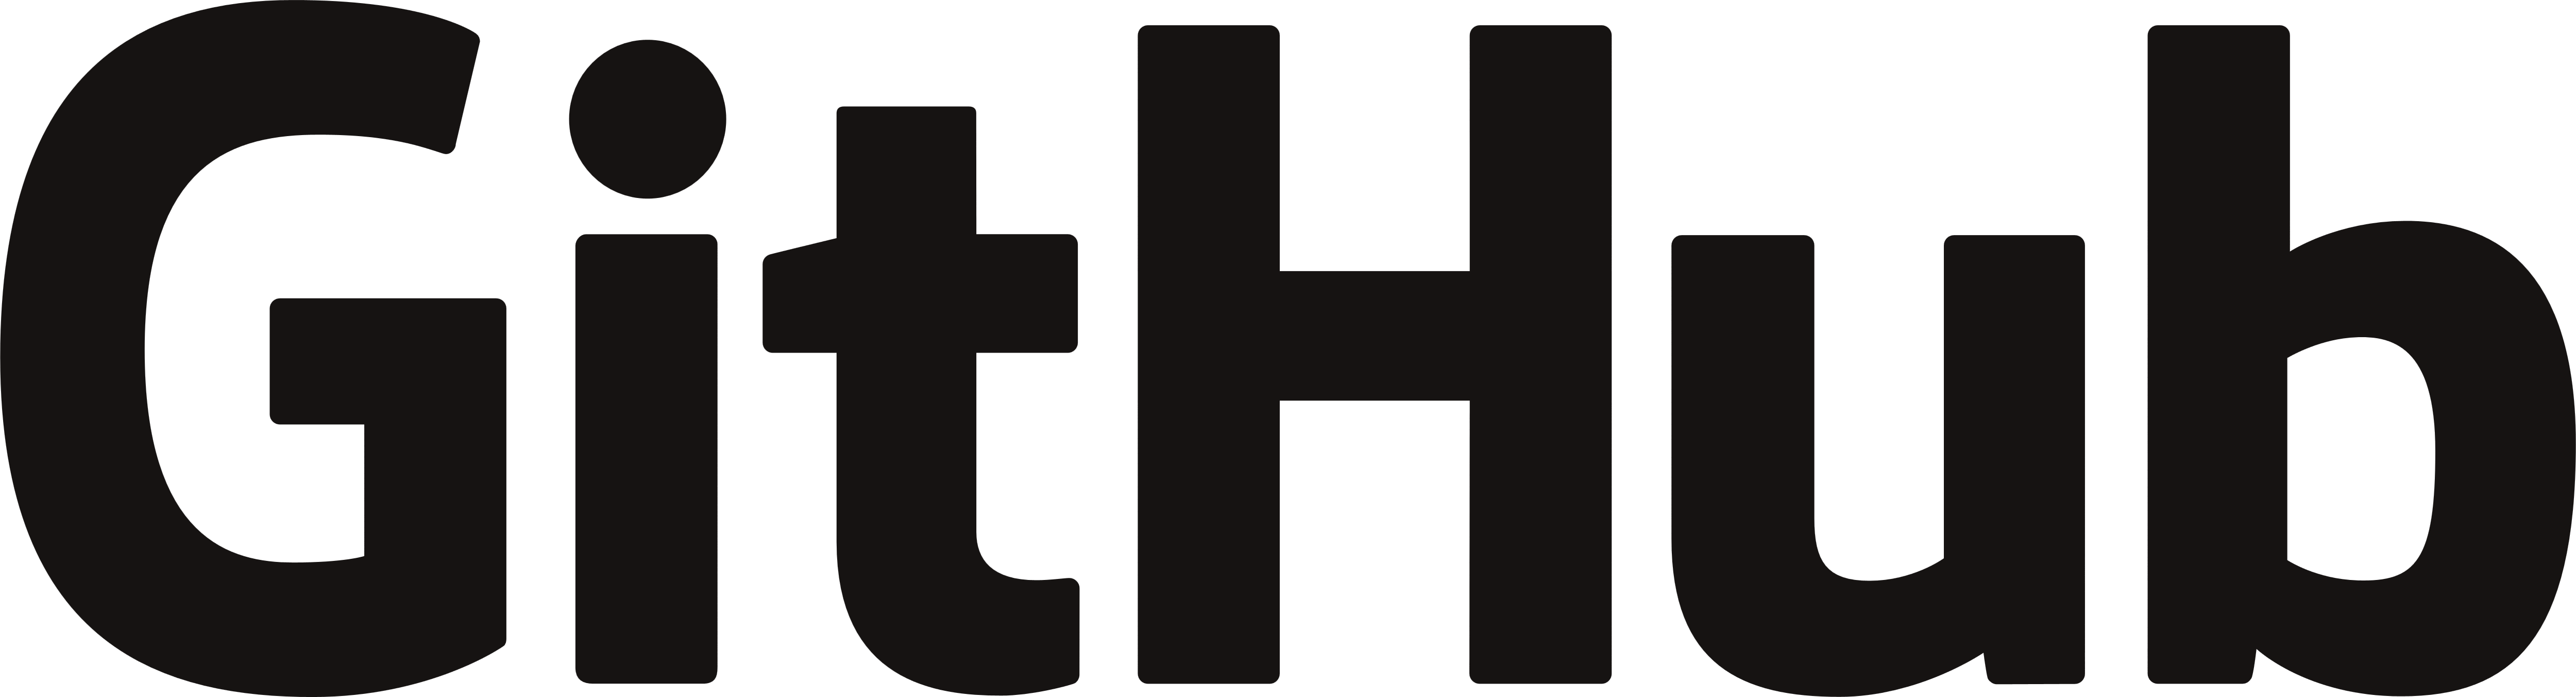 GitHub logo -small